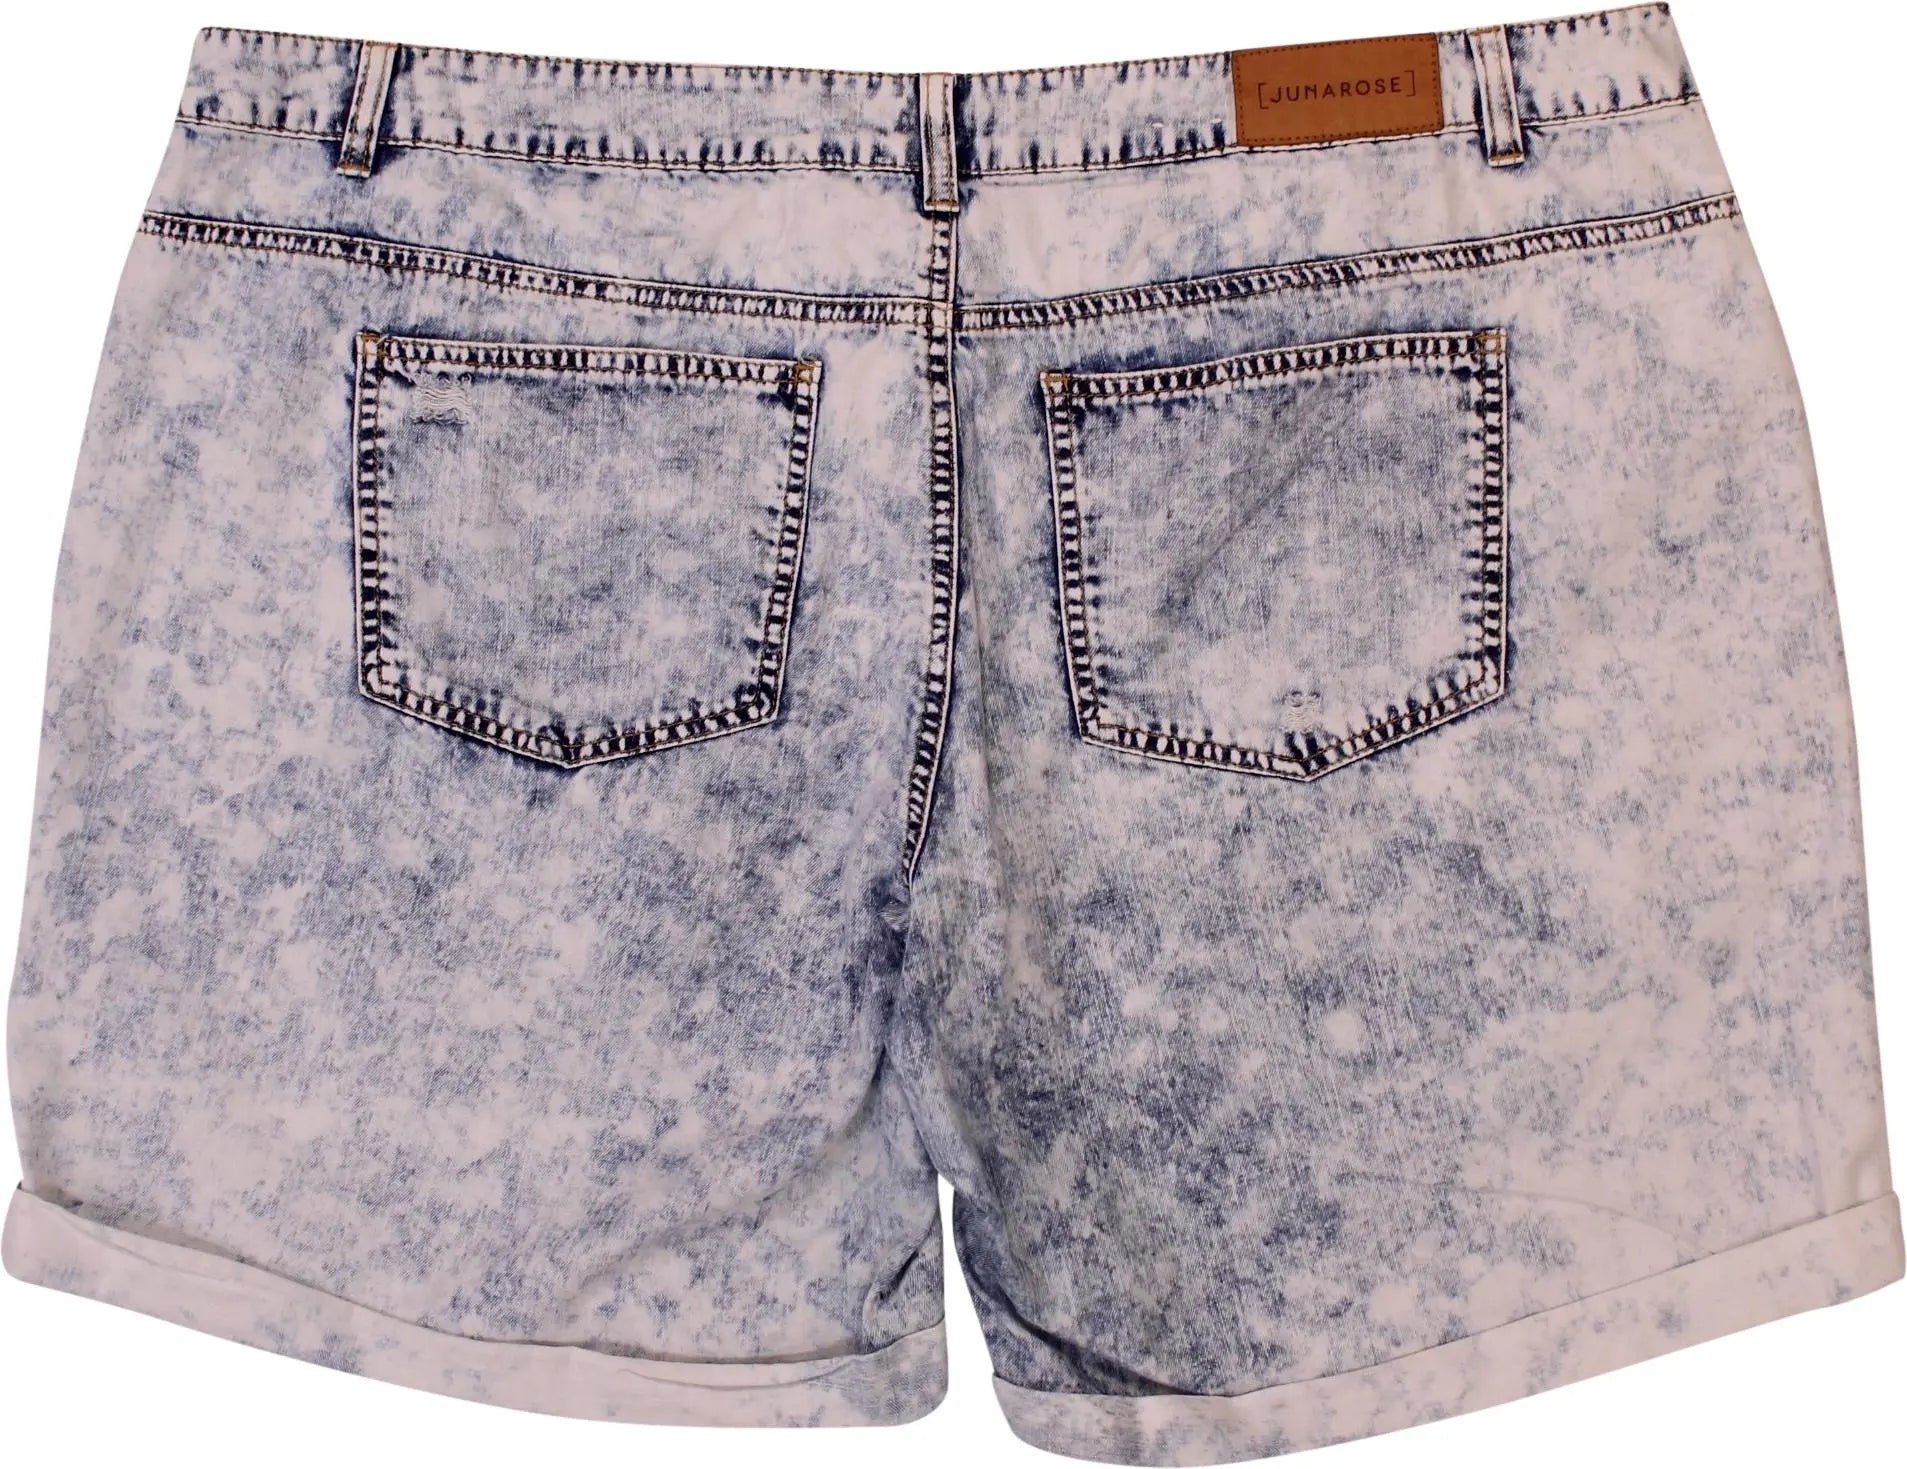 Junarose - Denim Acid Wash Shorts- ThriftTale.com - Vintage and second handclothing